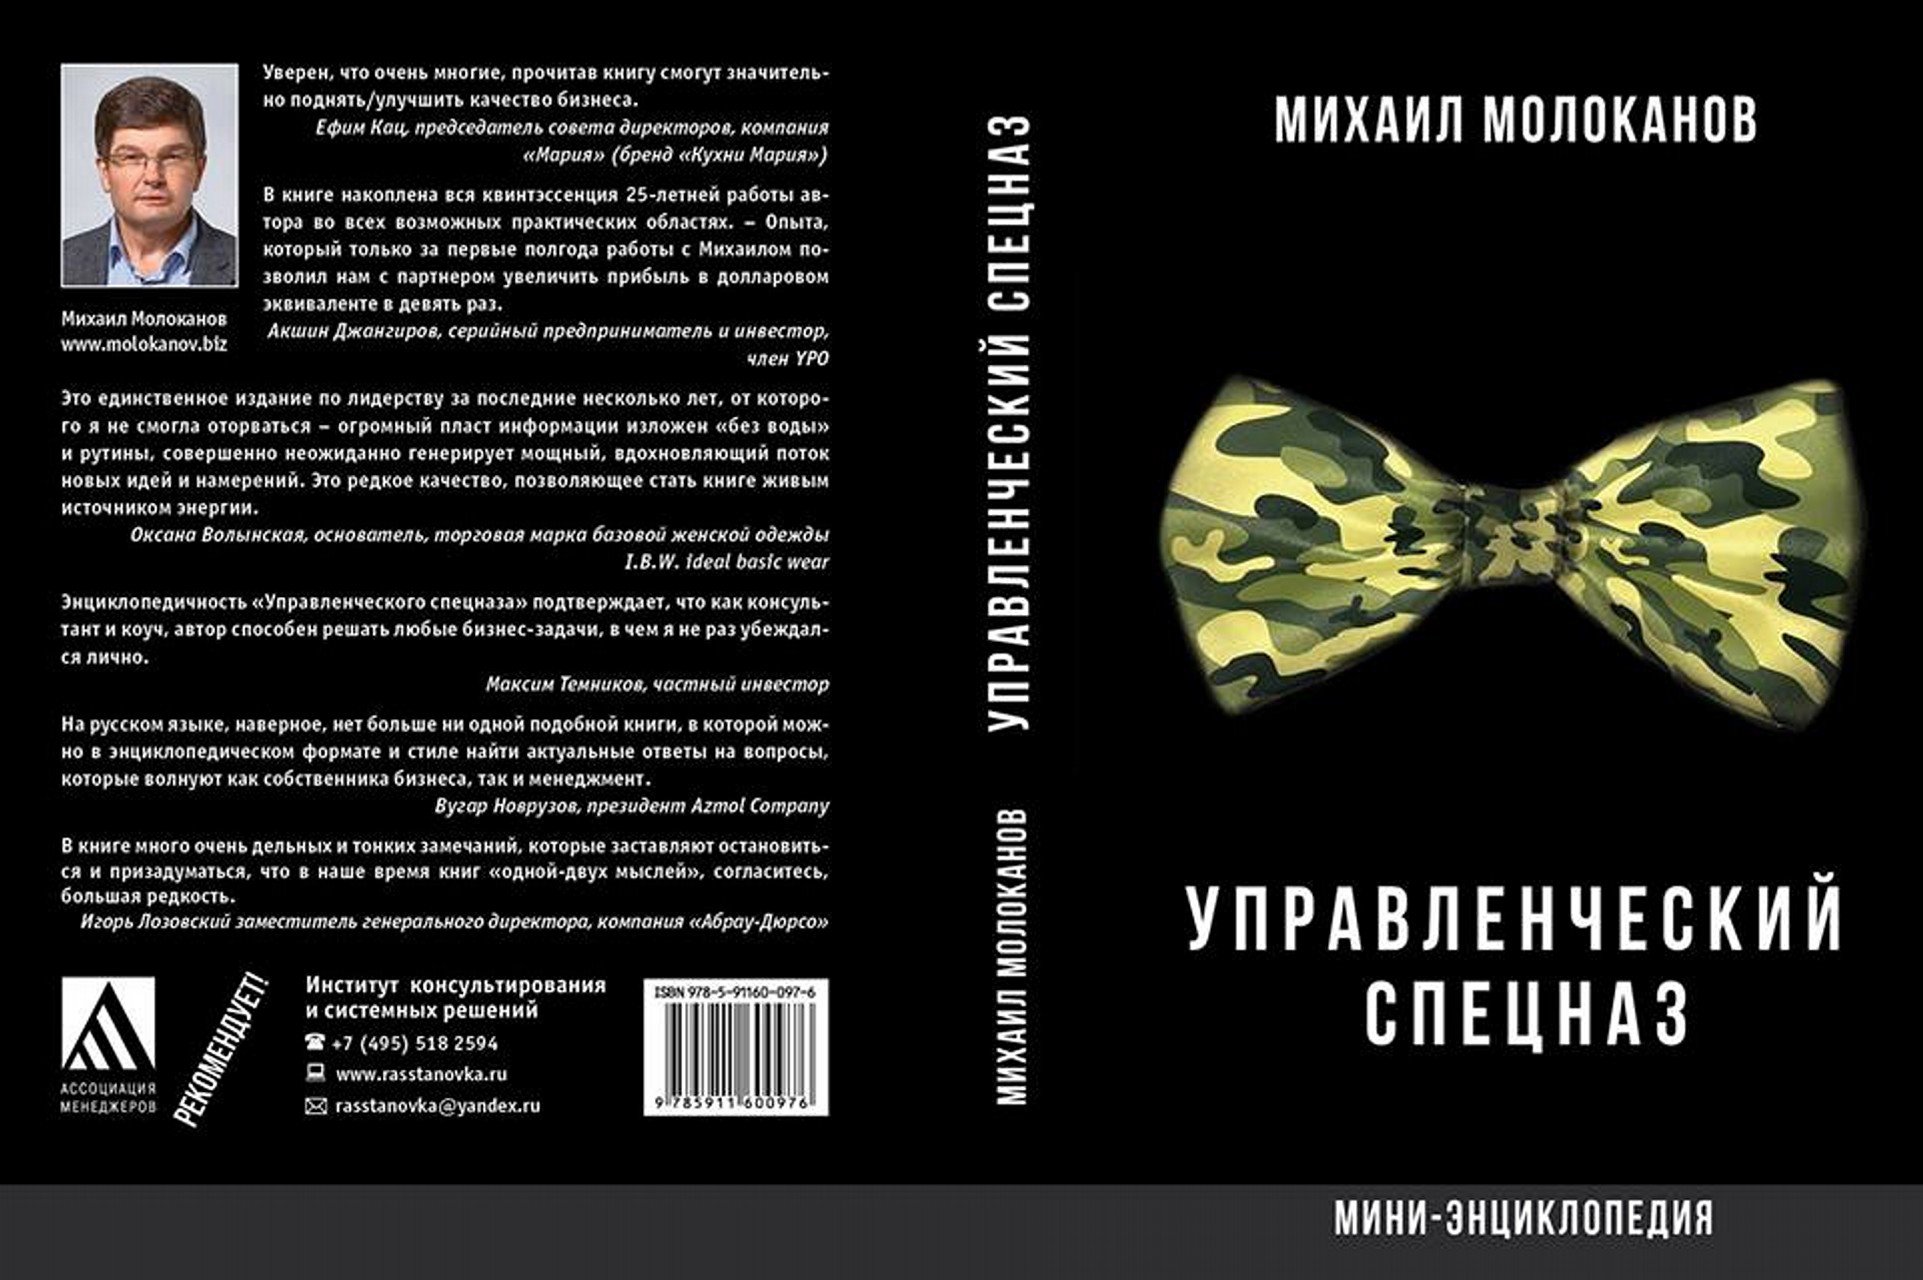 Михаил Молоканов: Управленческий спецназ